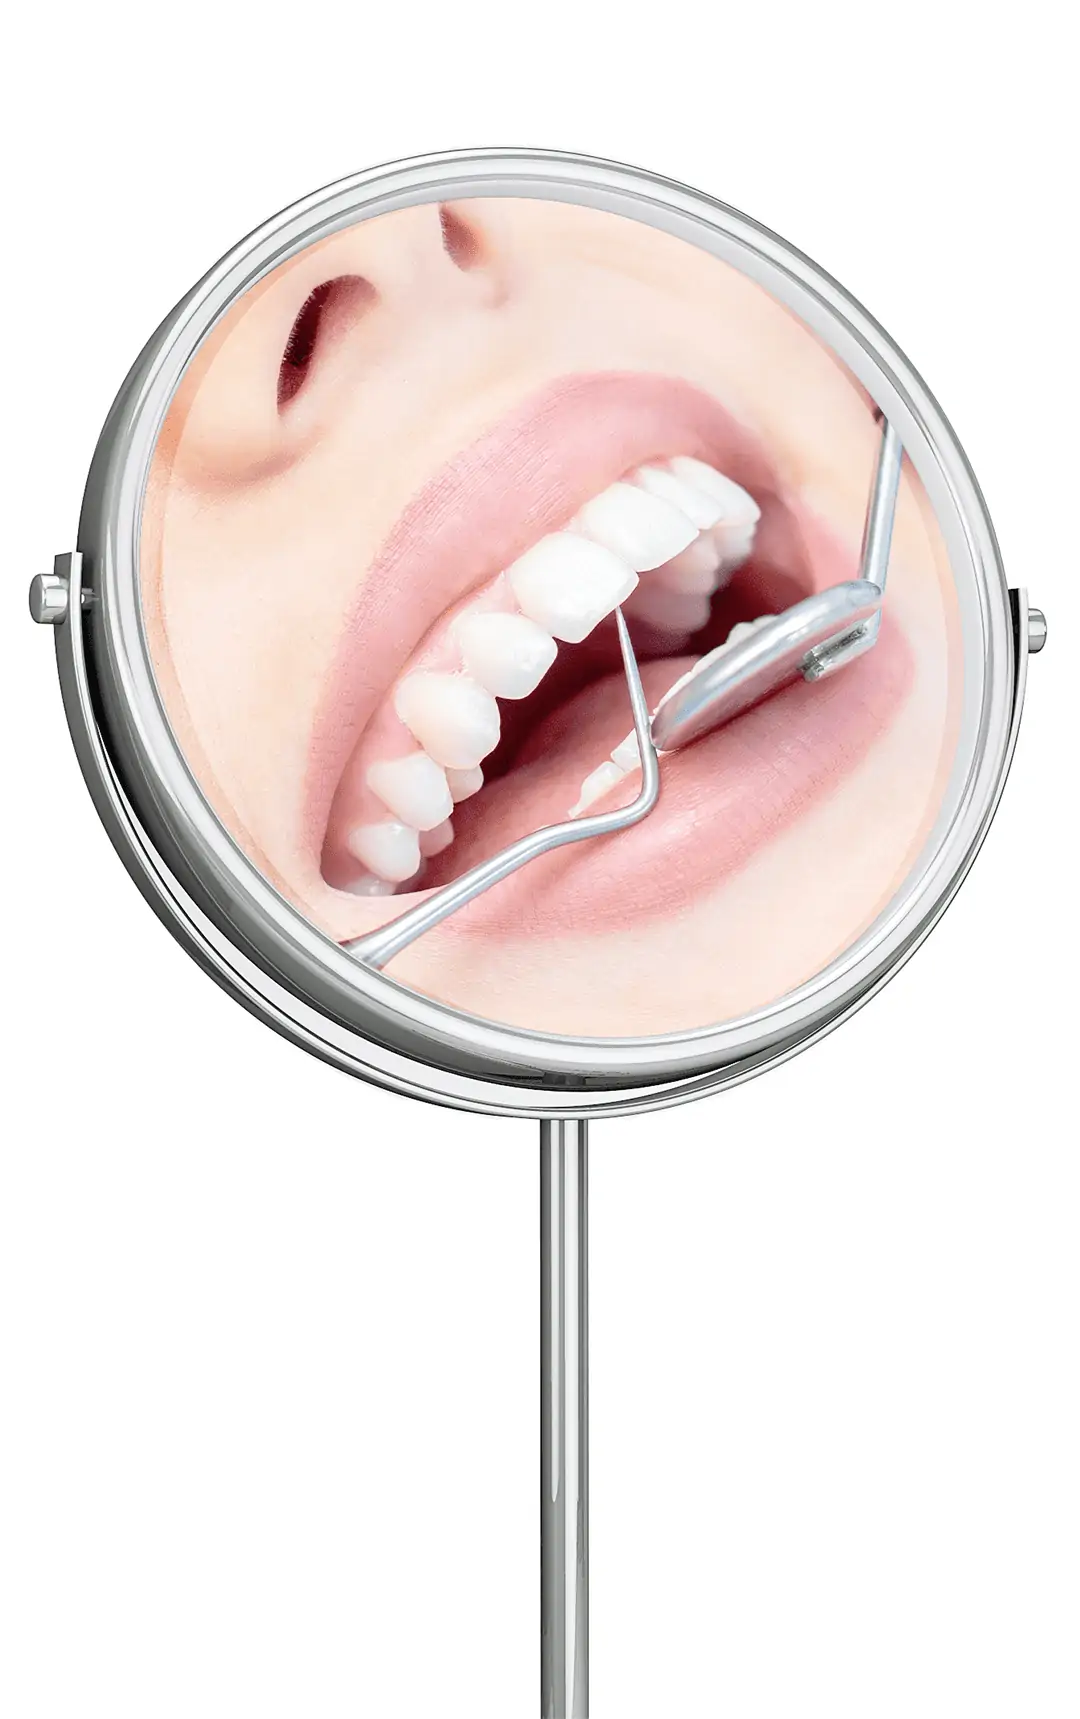 Endodontie (Wurzelkanalbehandlung)